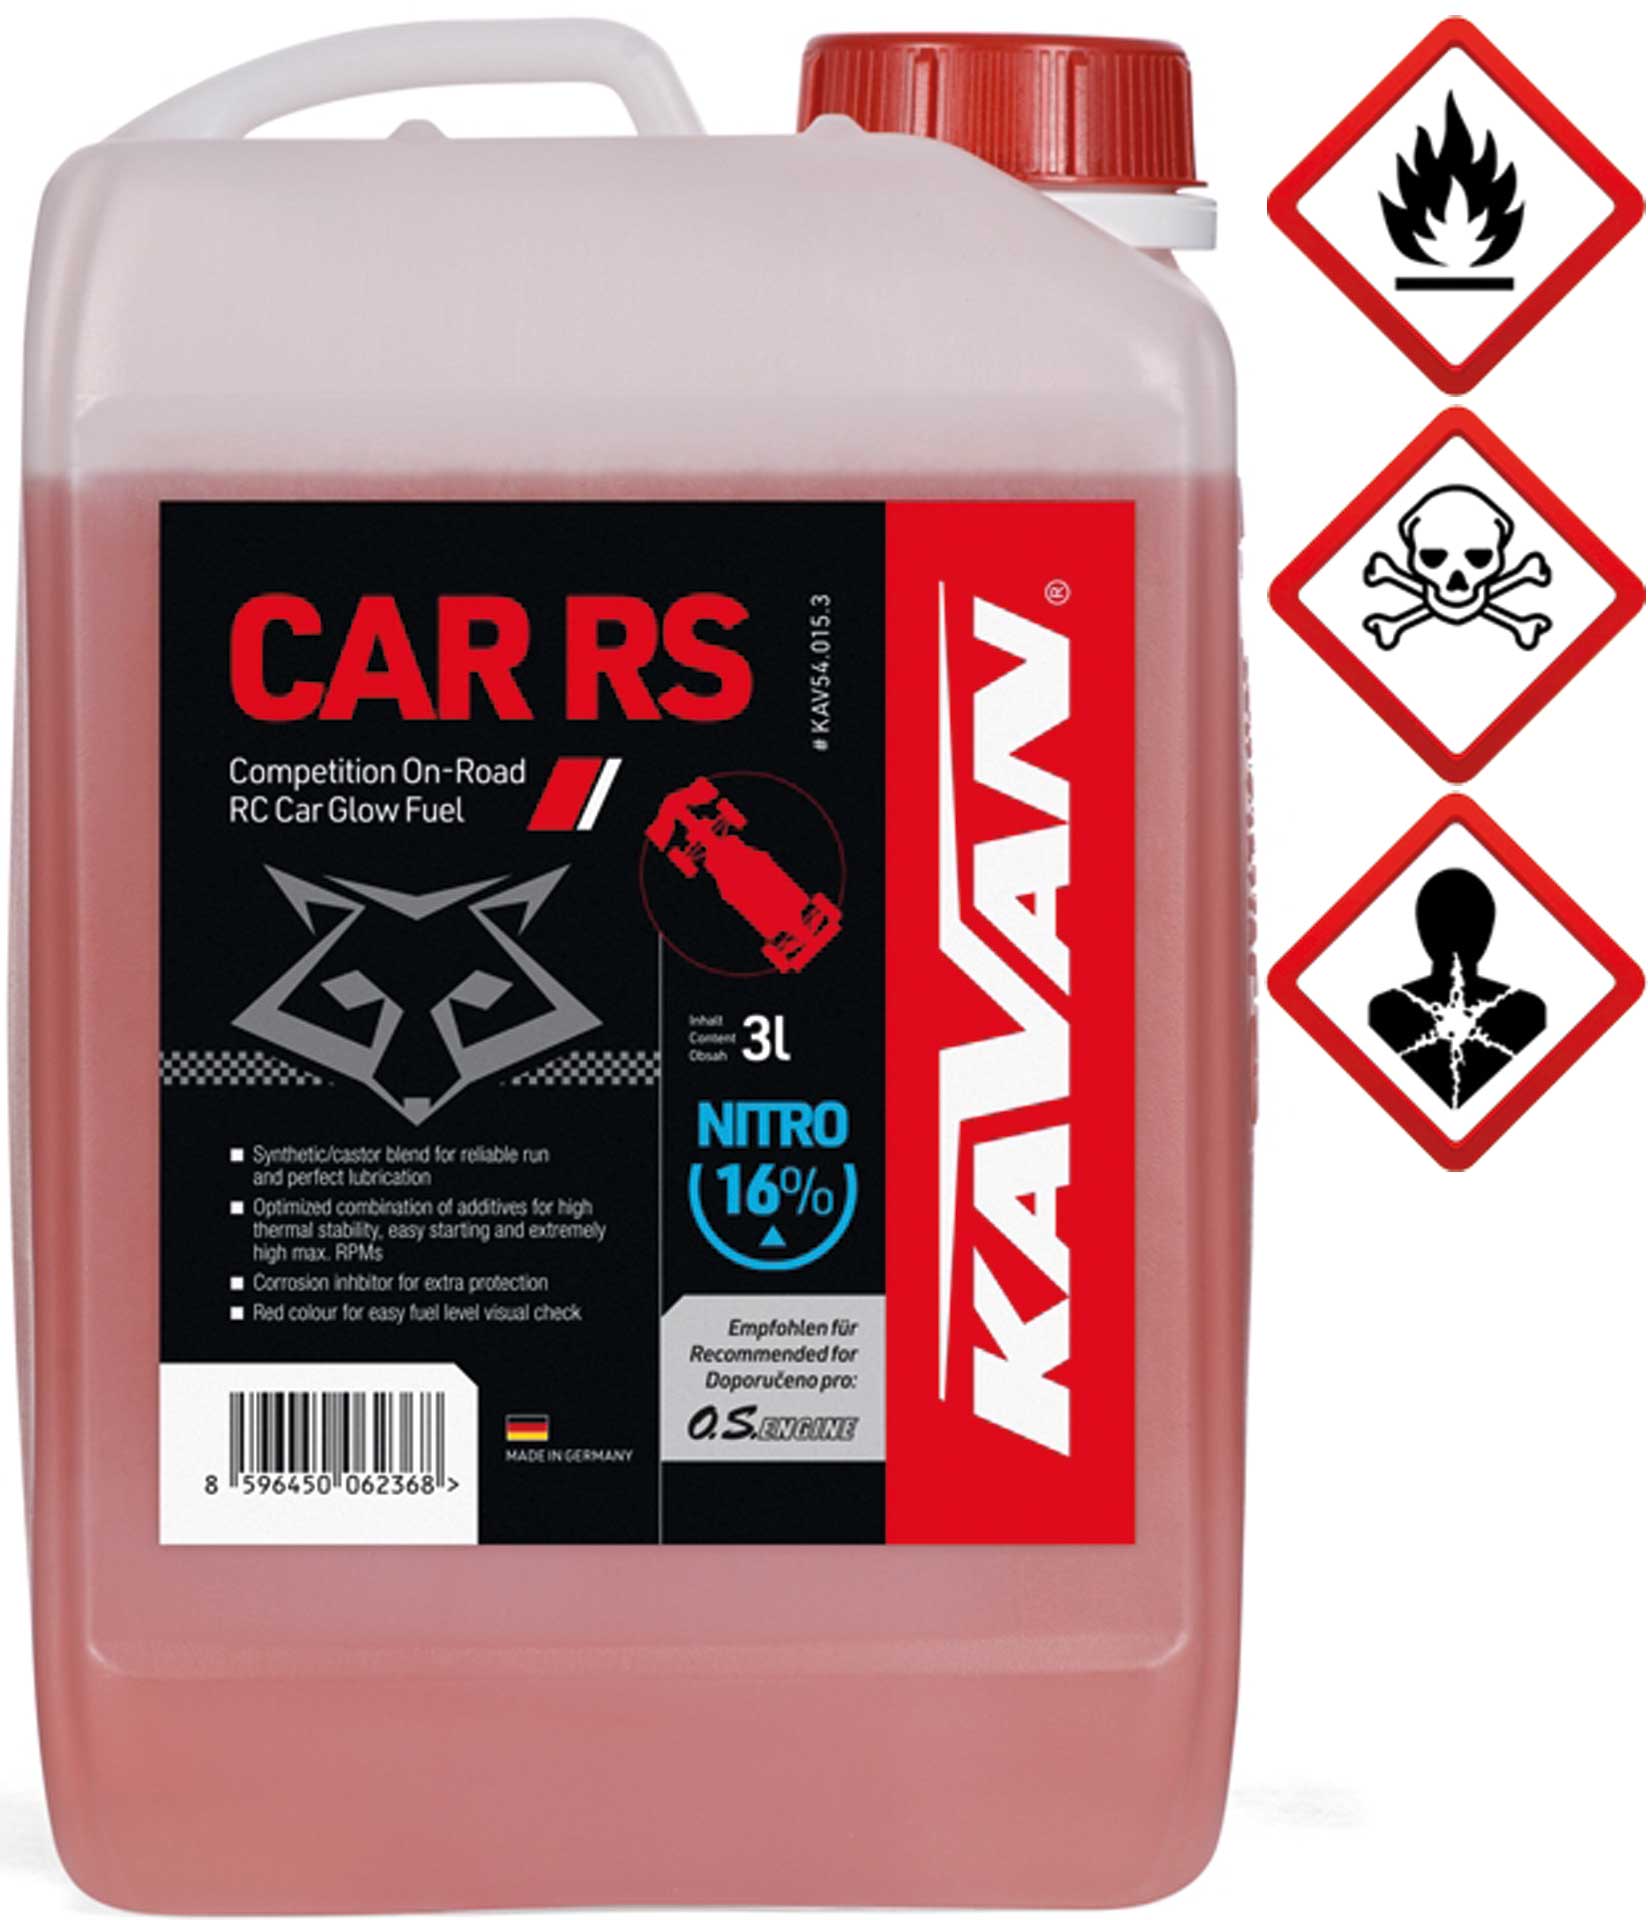 KAVAN Car RS 16% On Road Nitro 3 Liter Kraftstoff, Sprit, Treibstoff für Glühzünder-Motoren